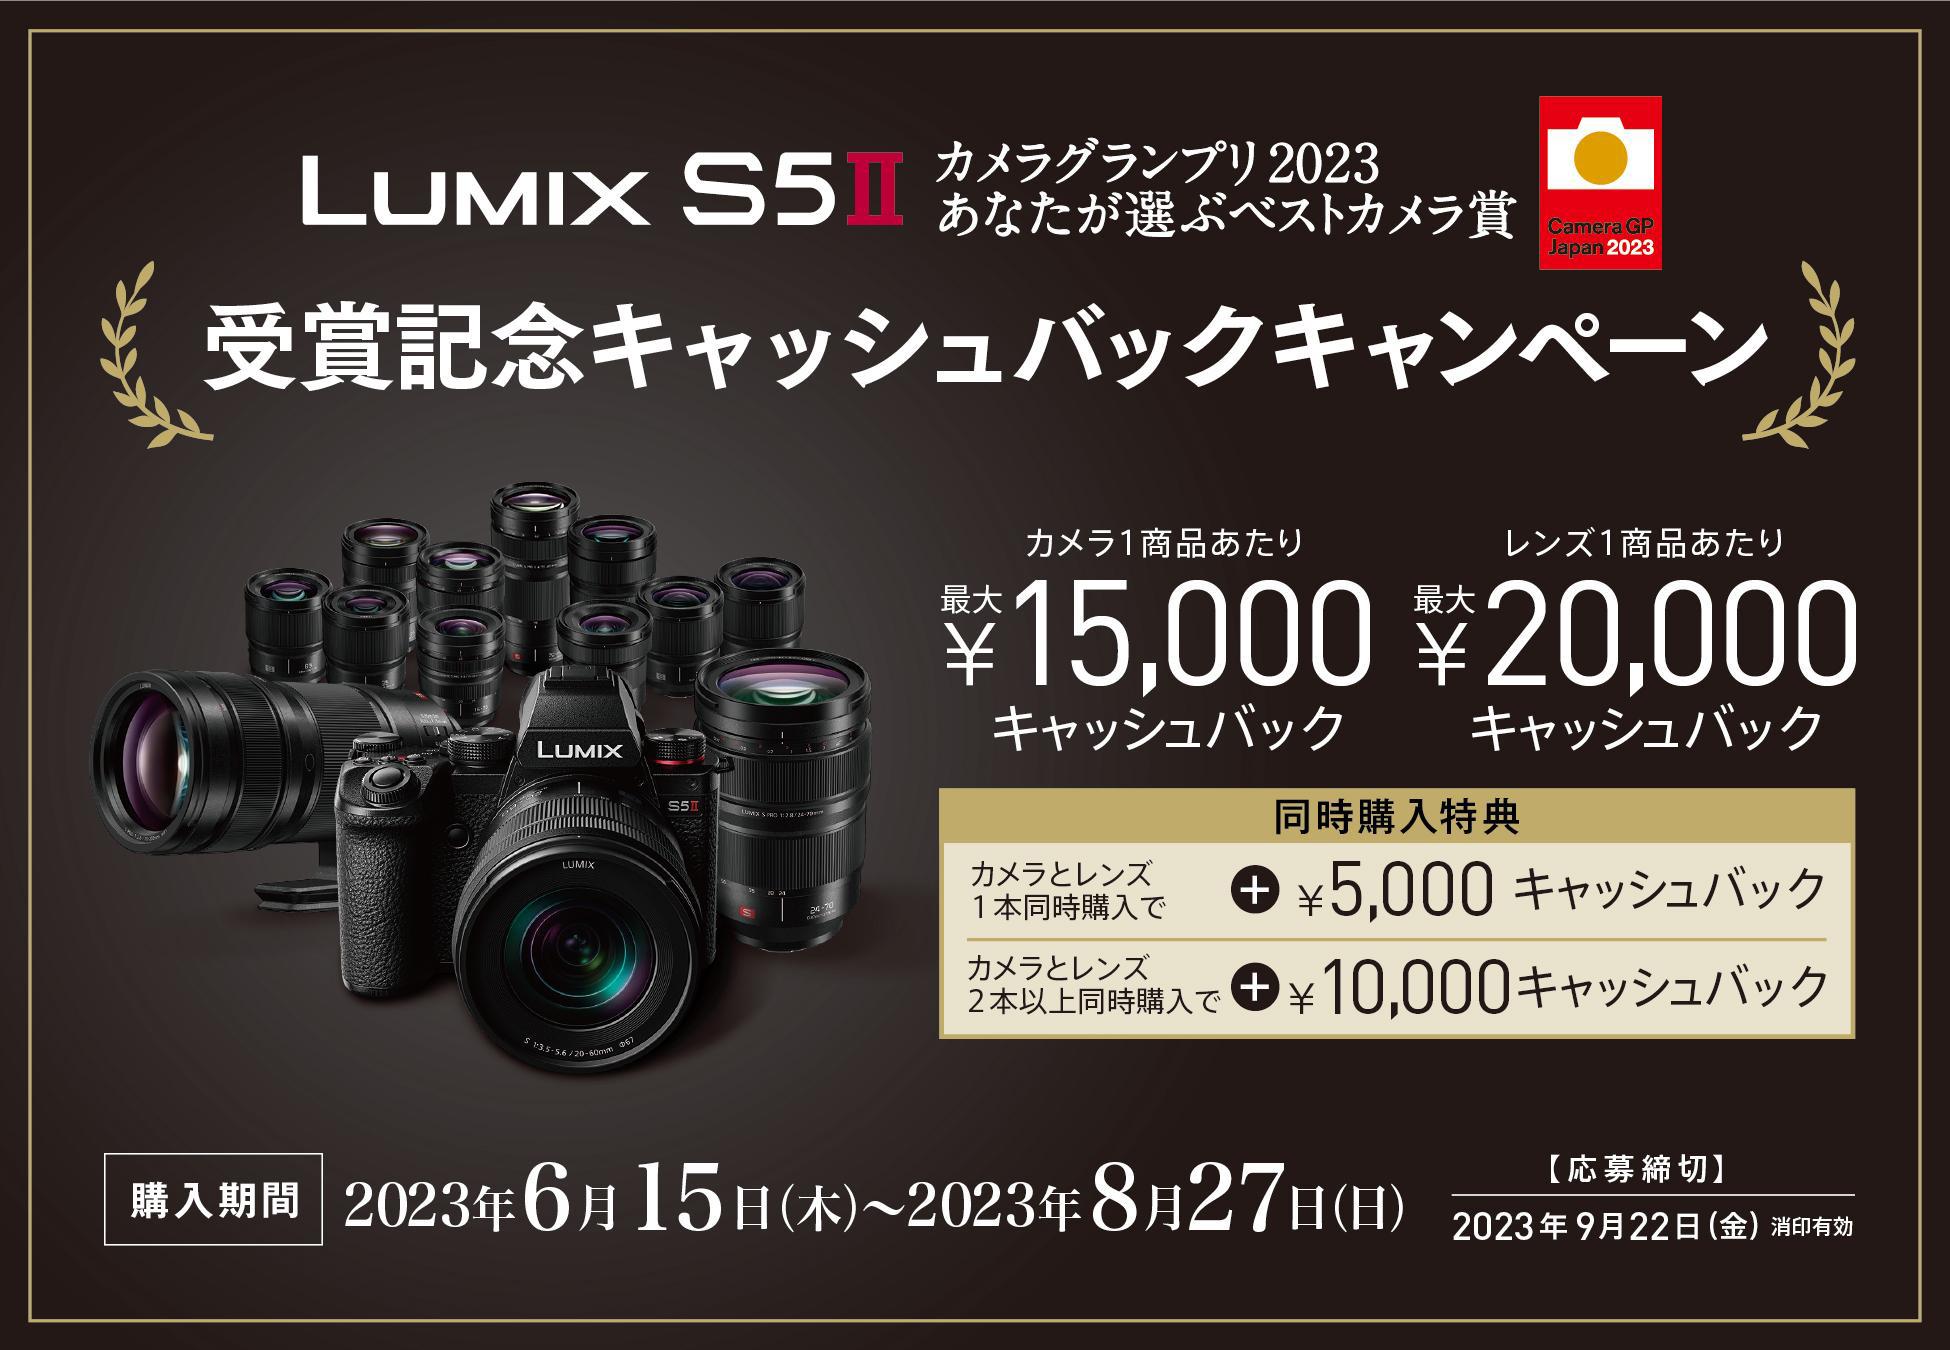 パナソニック、LUMIX S5II「カメラグランプリ2023 あなたが選ぶベスト